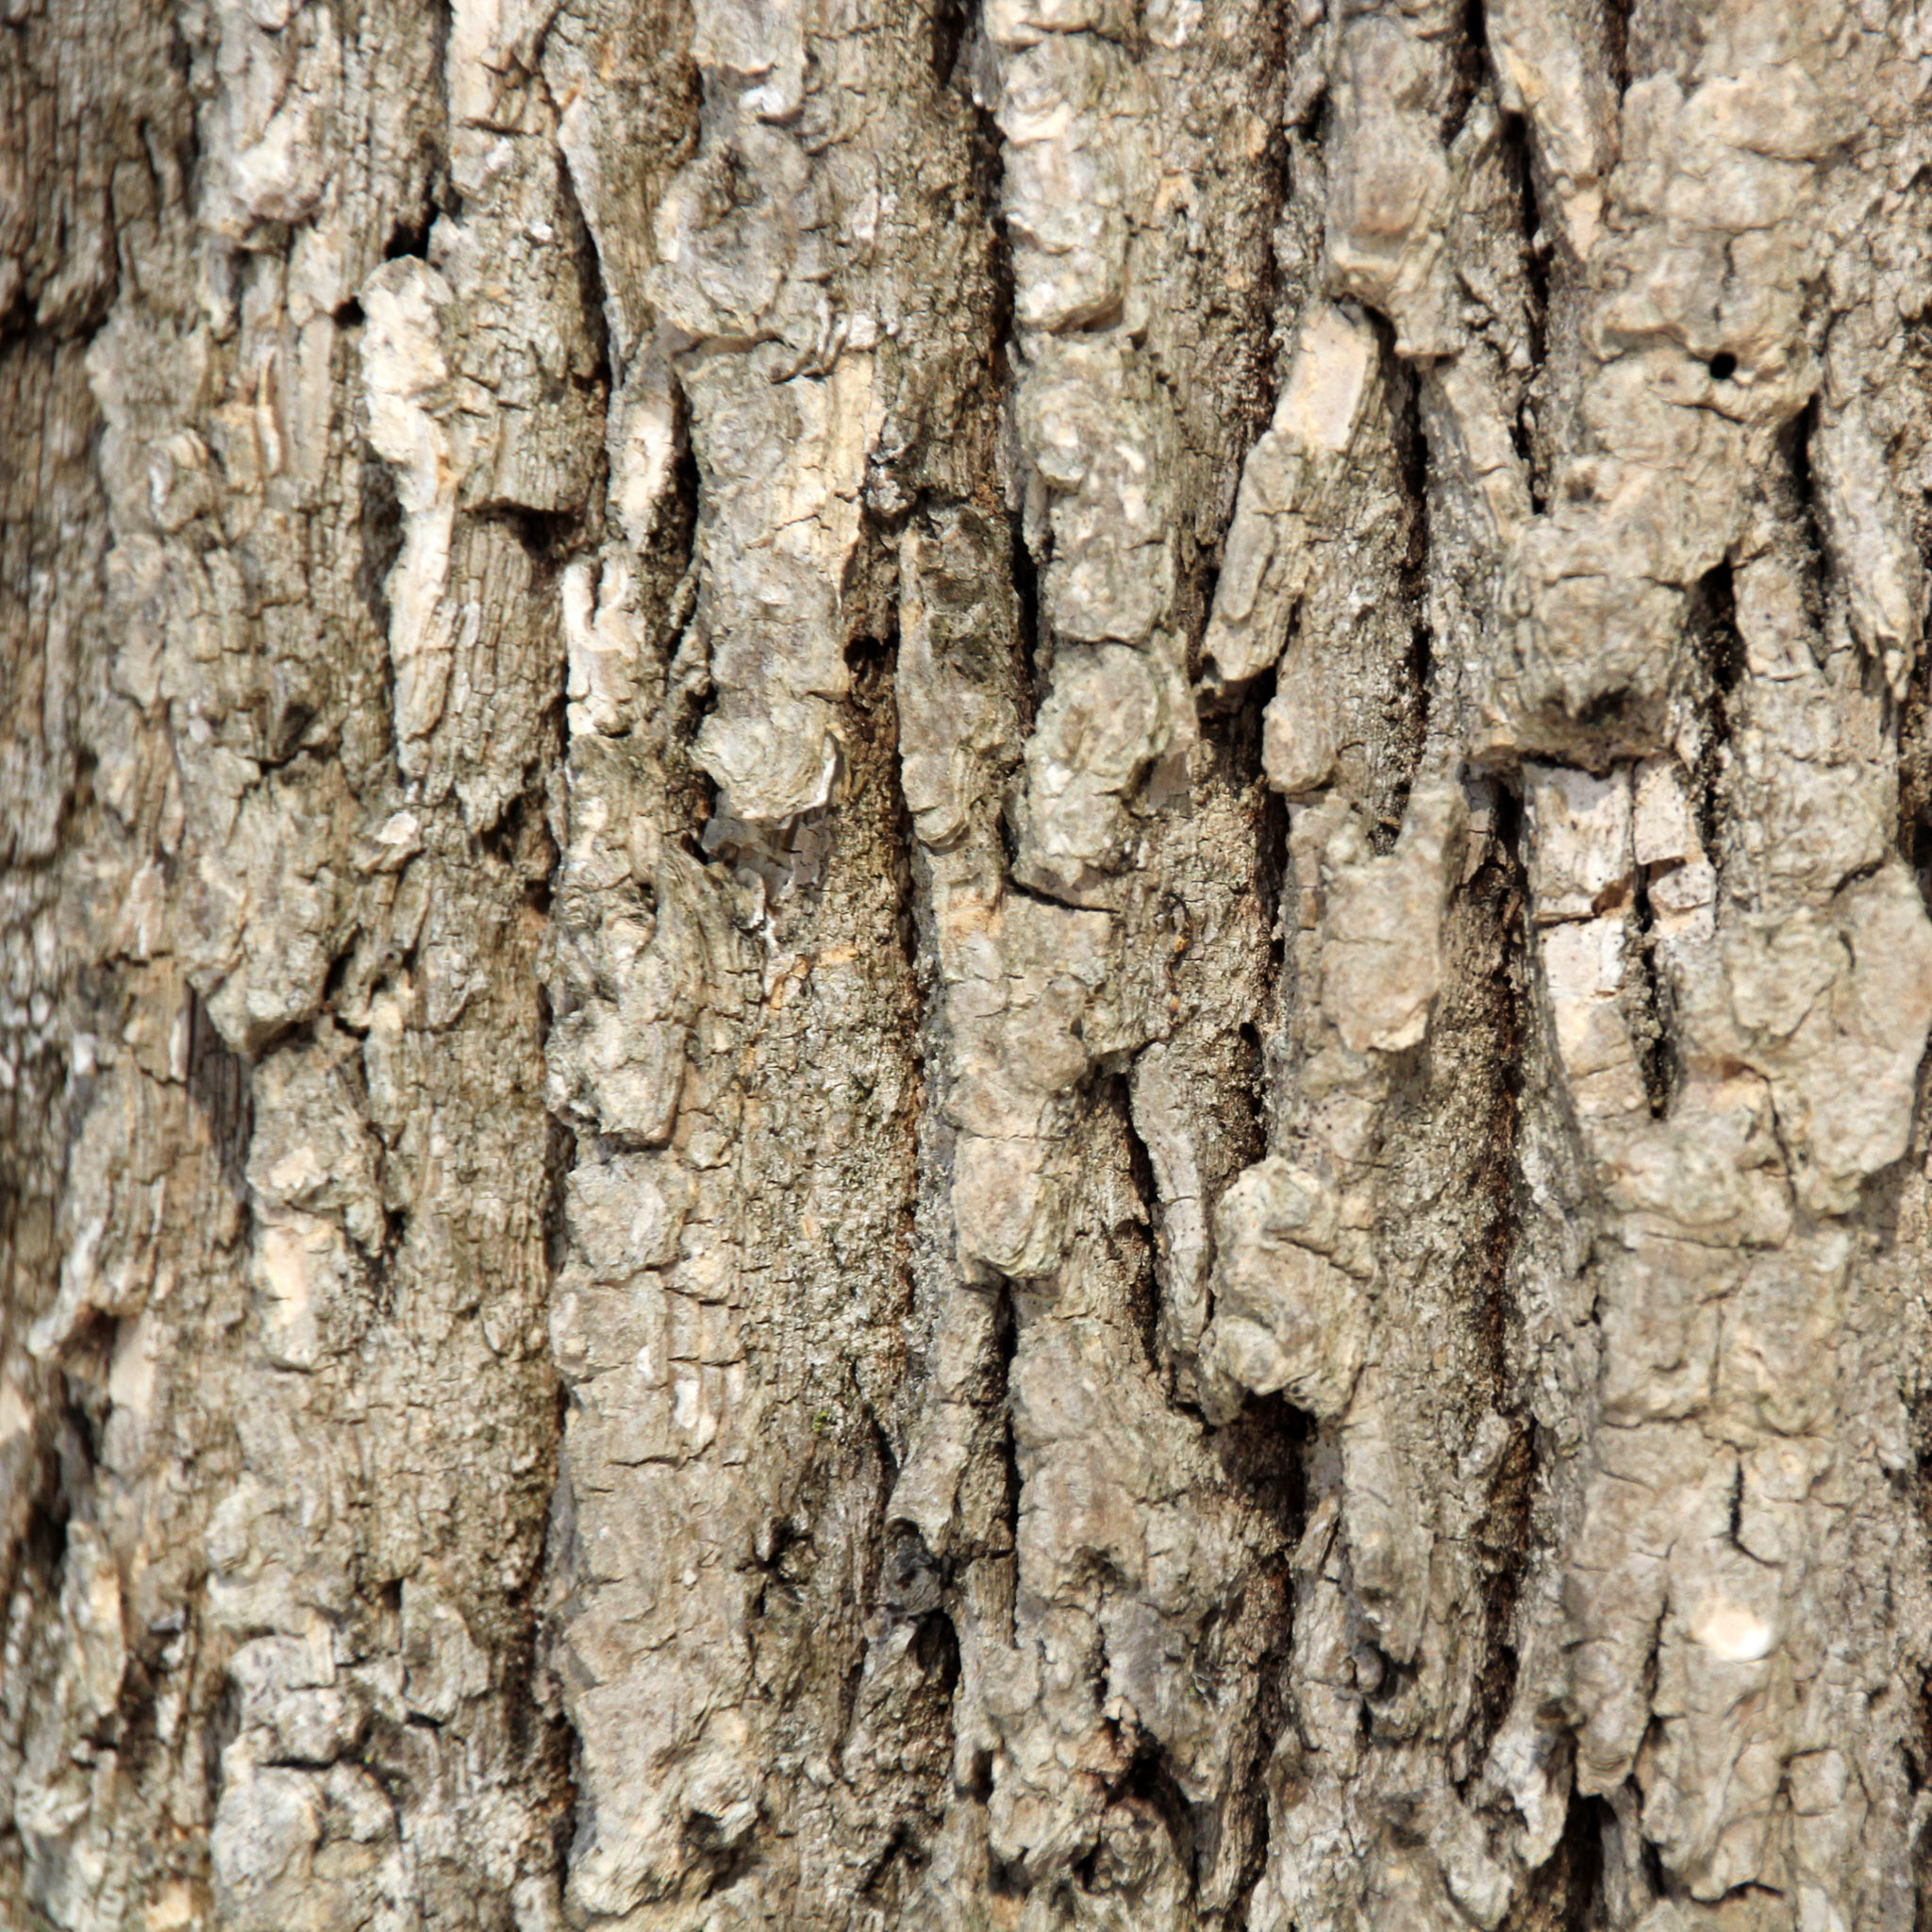 mitch - tree bark texture ipad wallpaper